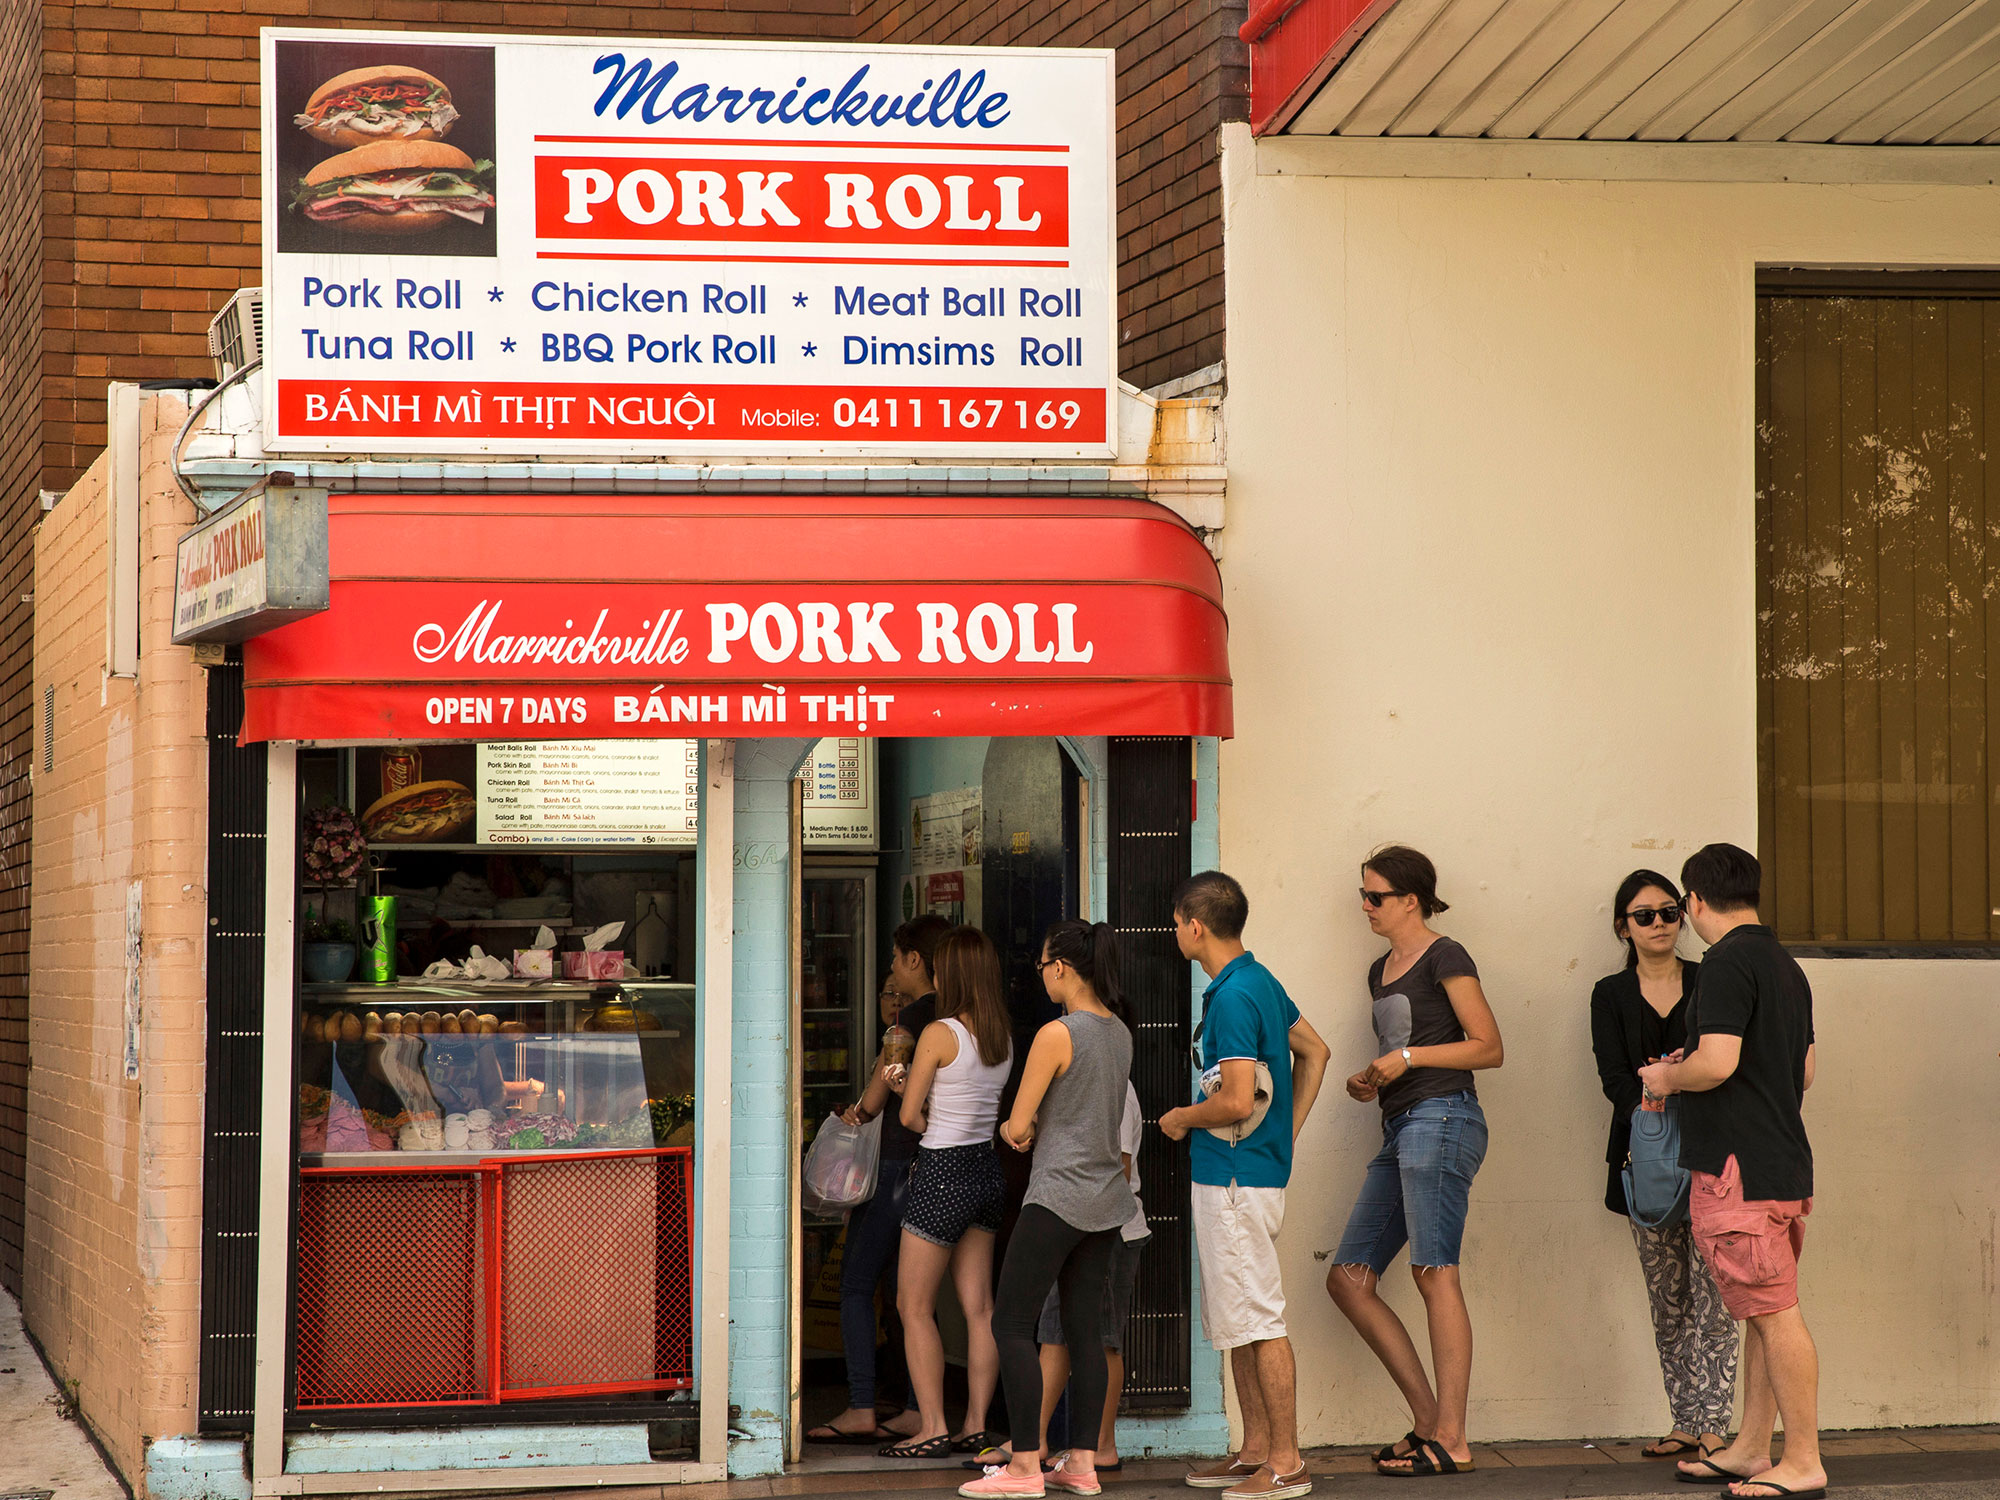 Marrickville Pork Roll 2000x1500.jpg